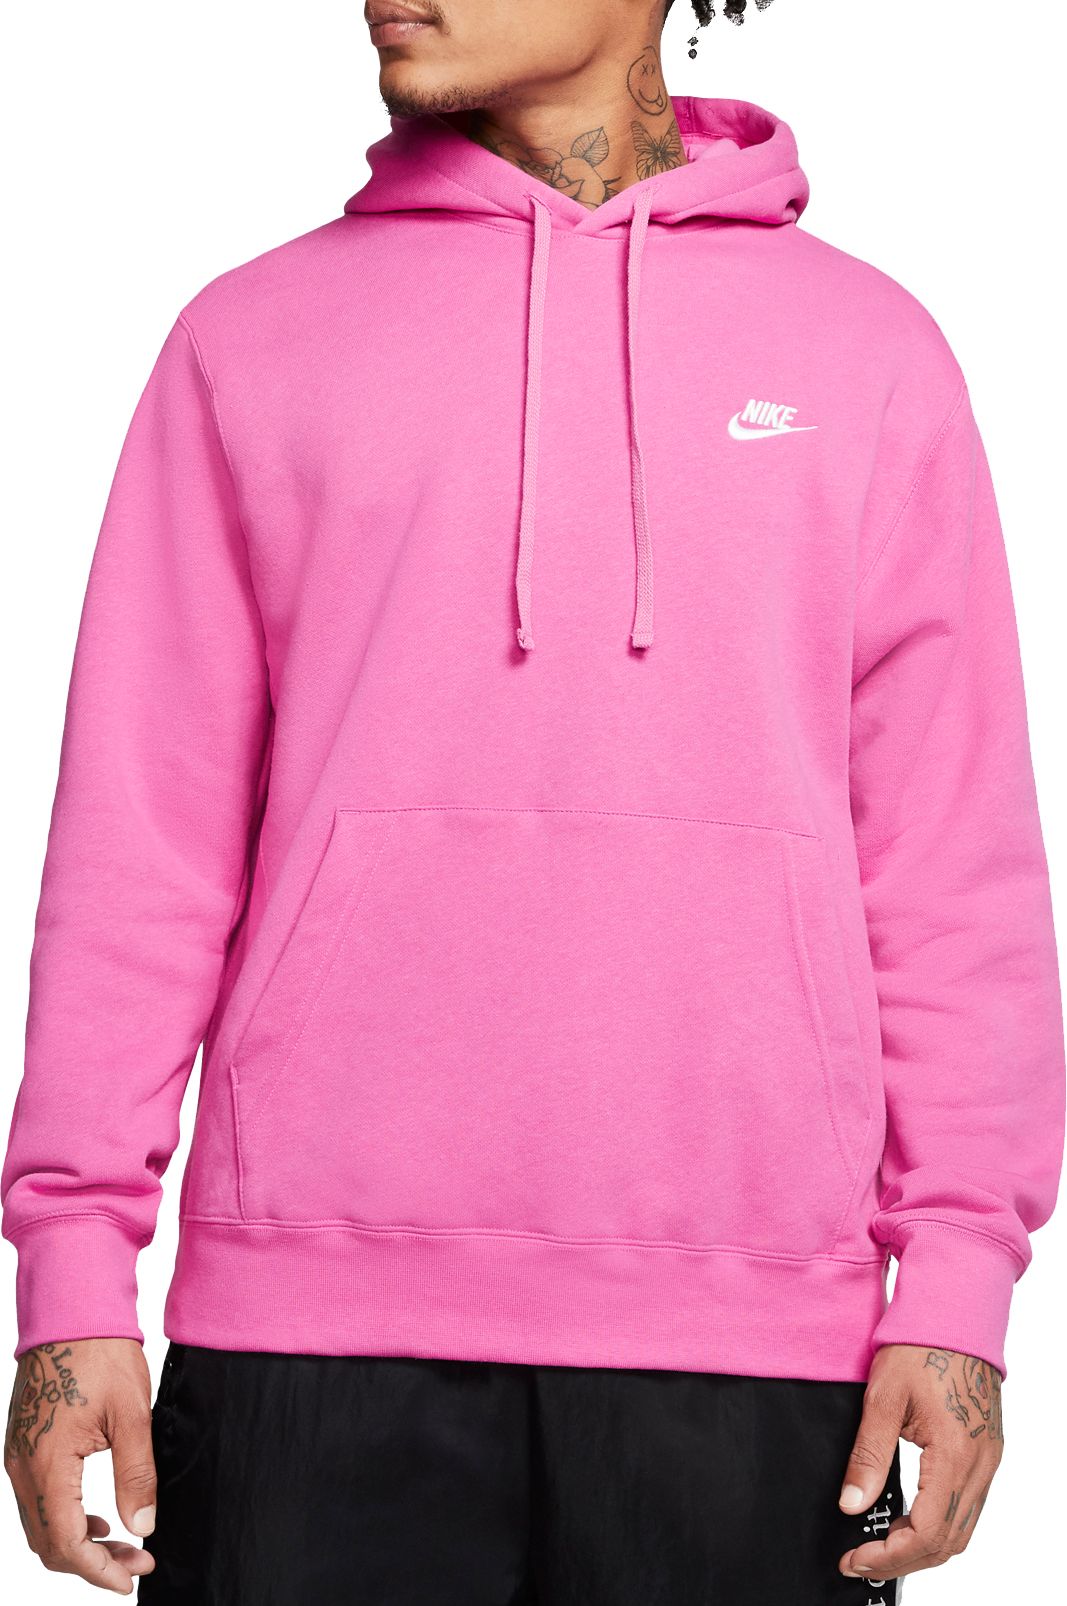 pink nike jogging suit